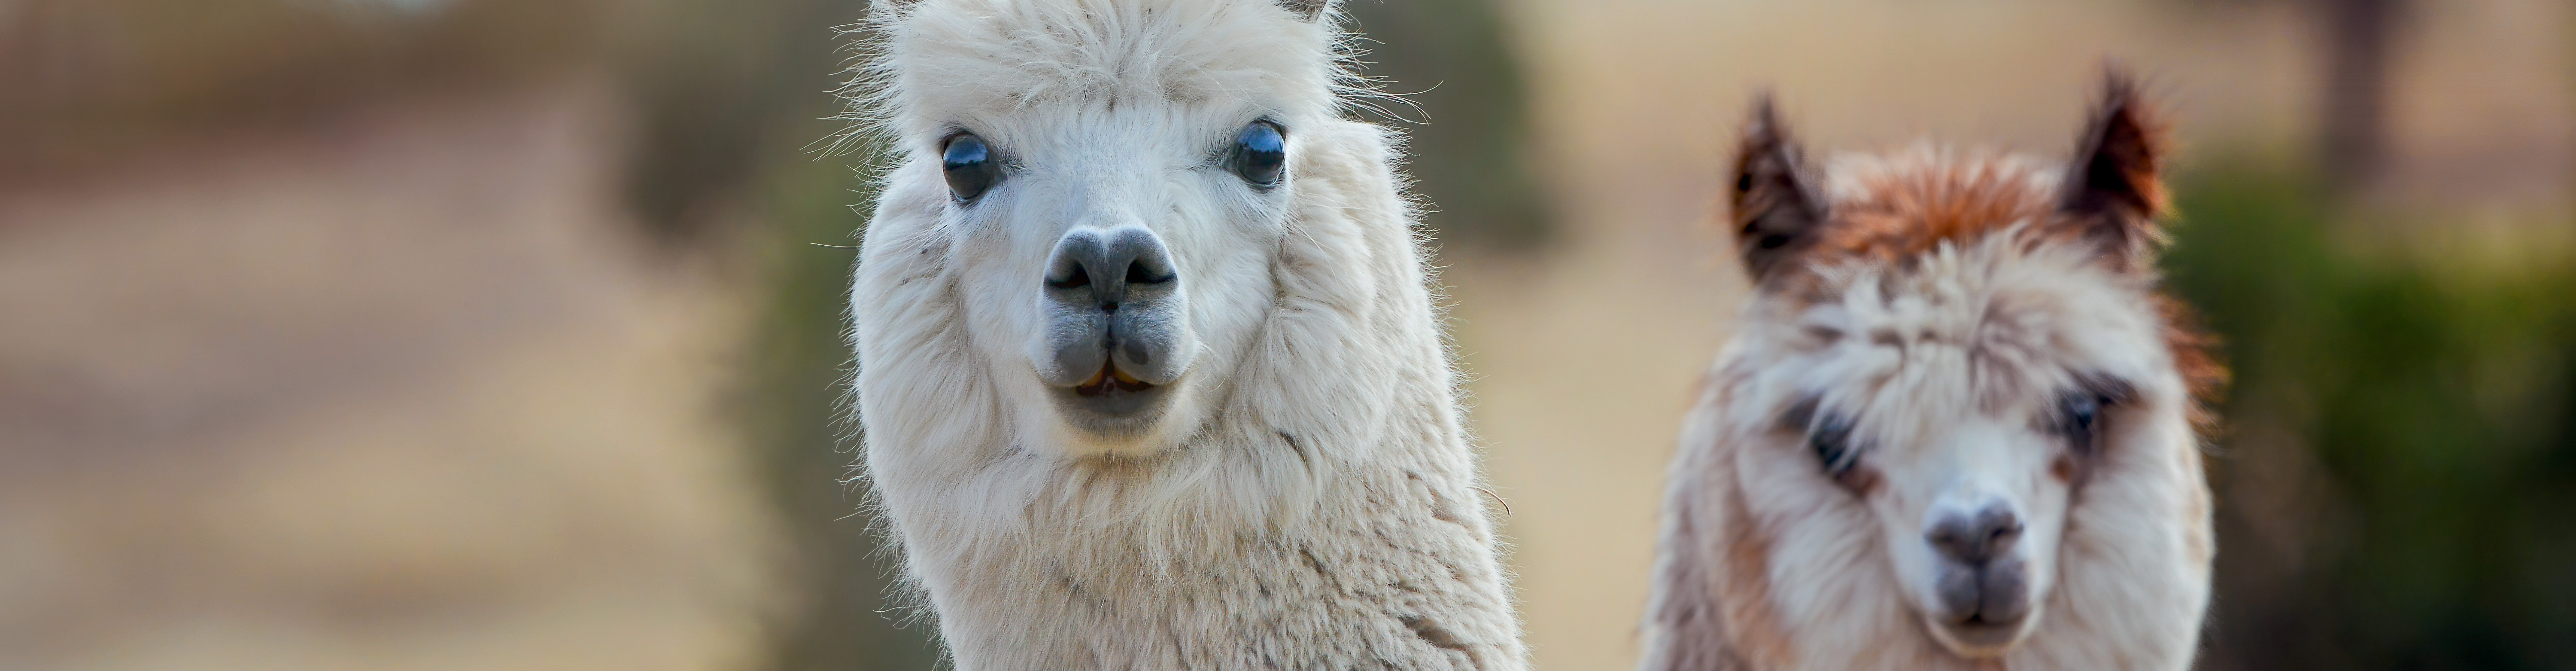 Visite de la ferme pédagogique des lamas de Brandacot